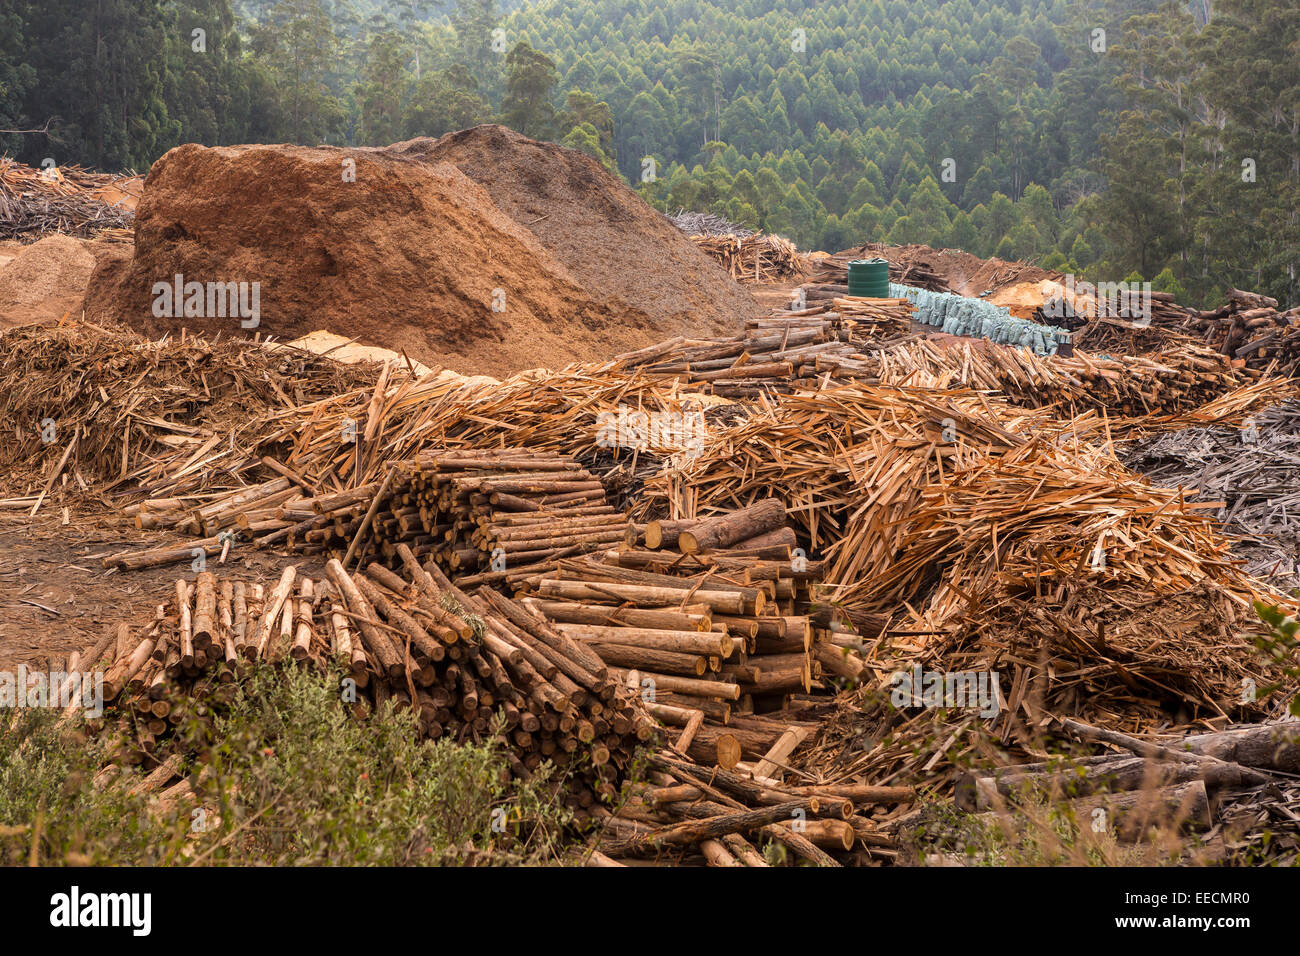 Swasiland, Afrika - Holzindustrie in Hhohho Bezirk. Pfähle aus Holz, Sägemehl und Schrägstrich in der Nähe von Mühle. Stockfoto